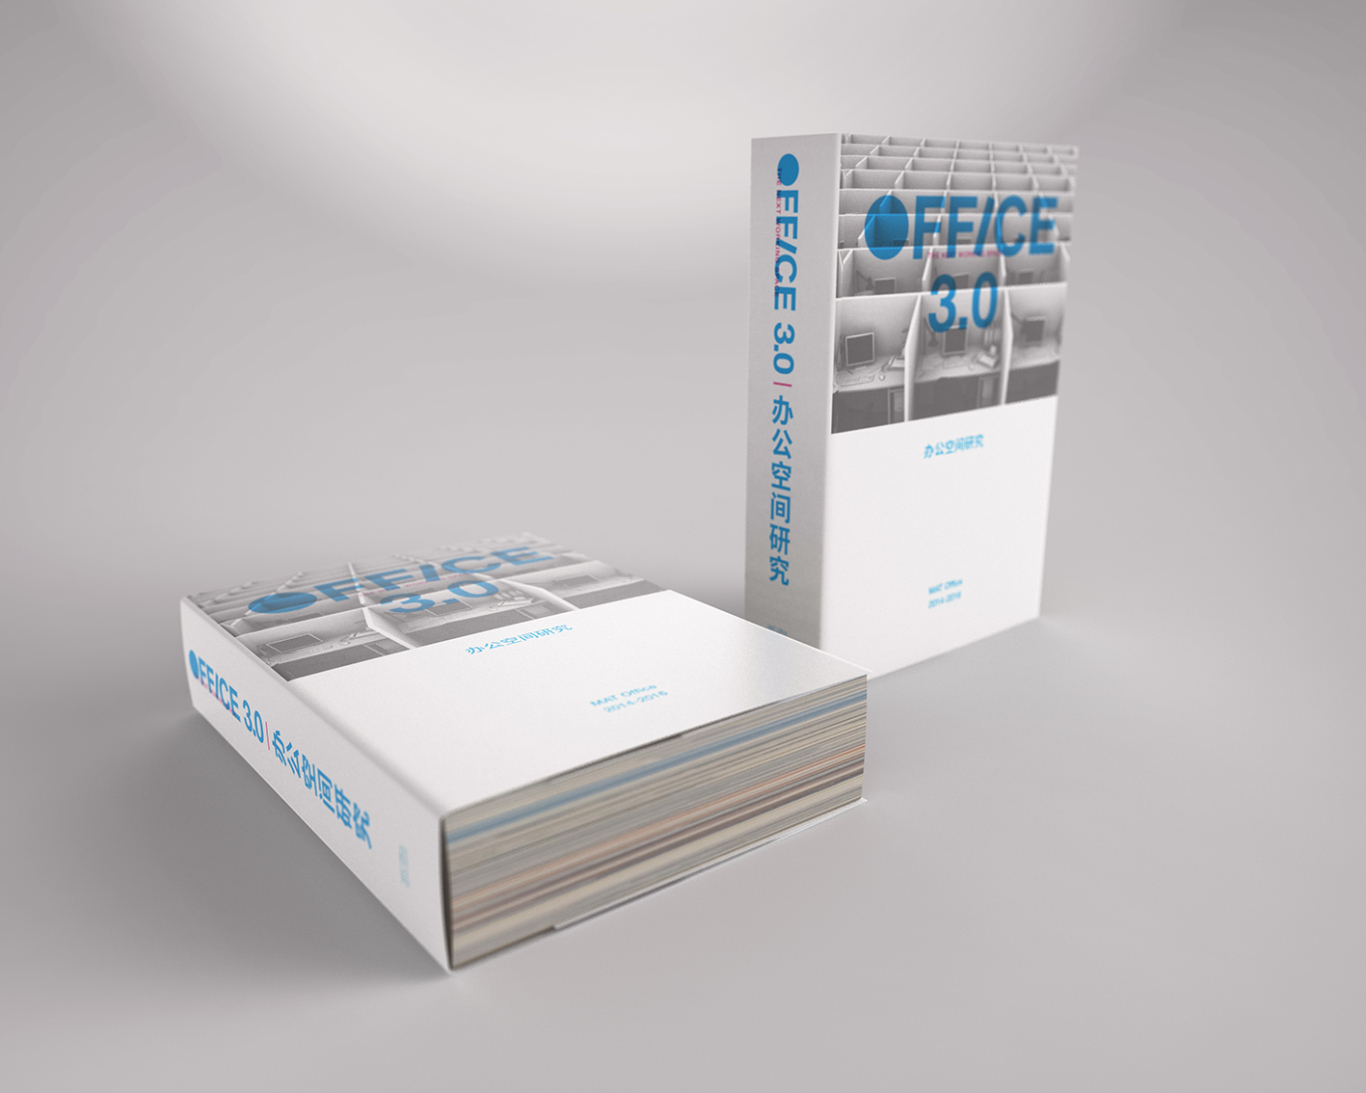 OFFICE 3.0 《办公空间研究》书籍设计图2